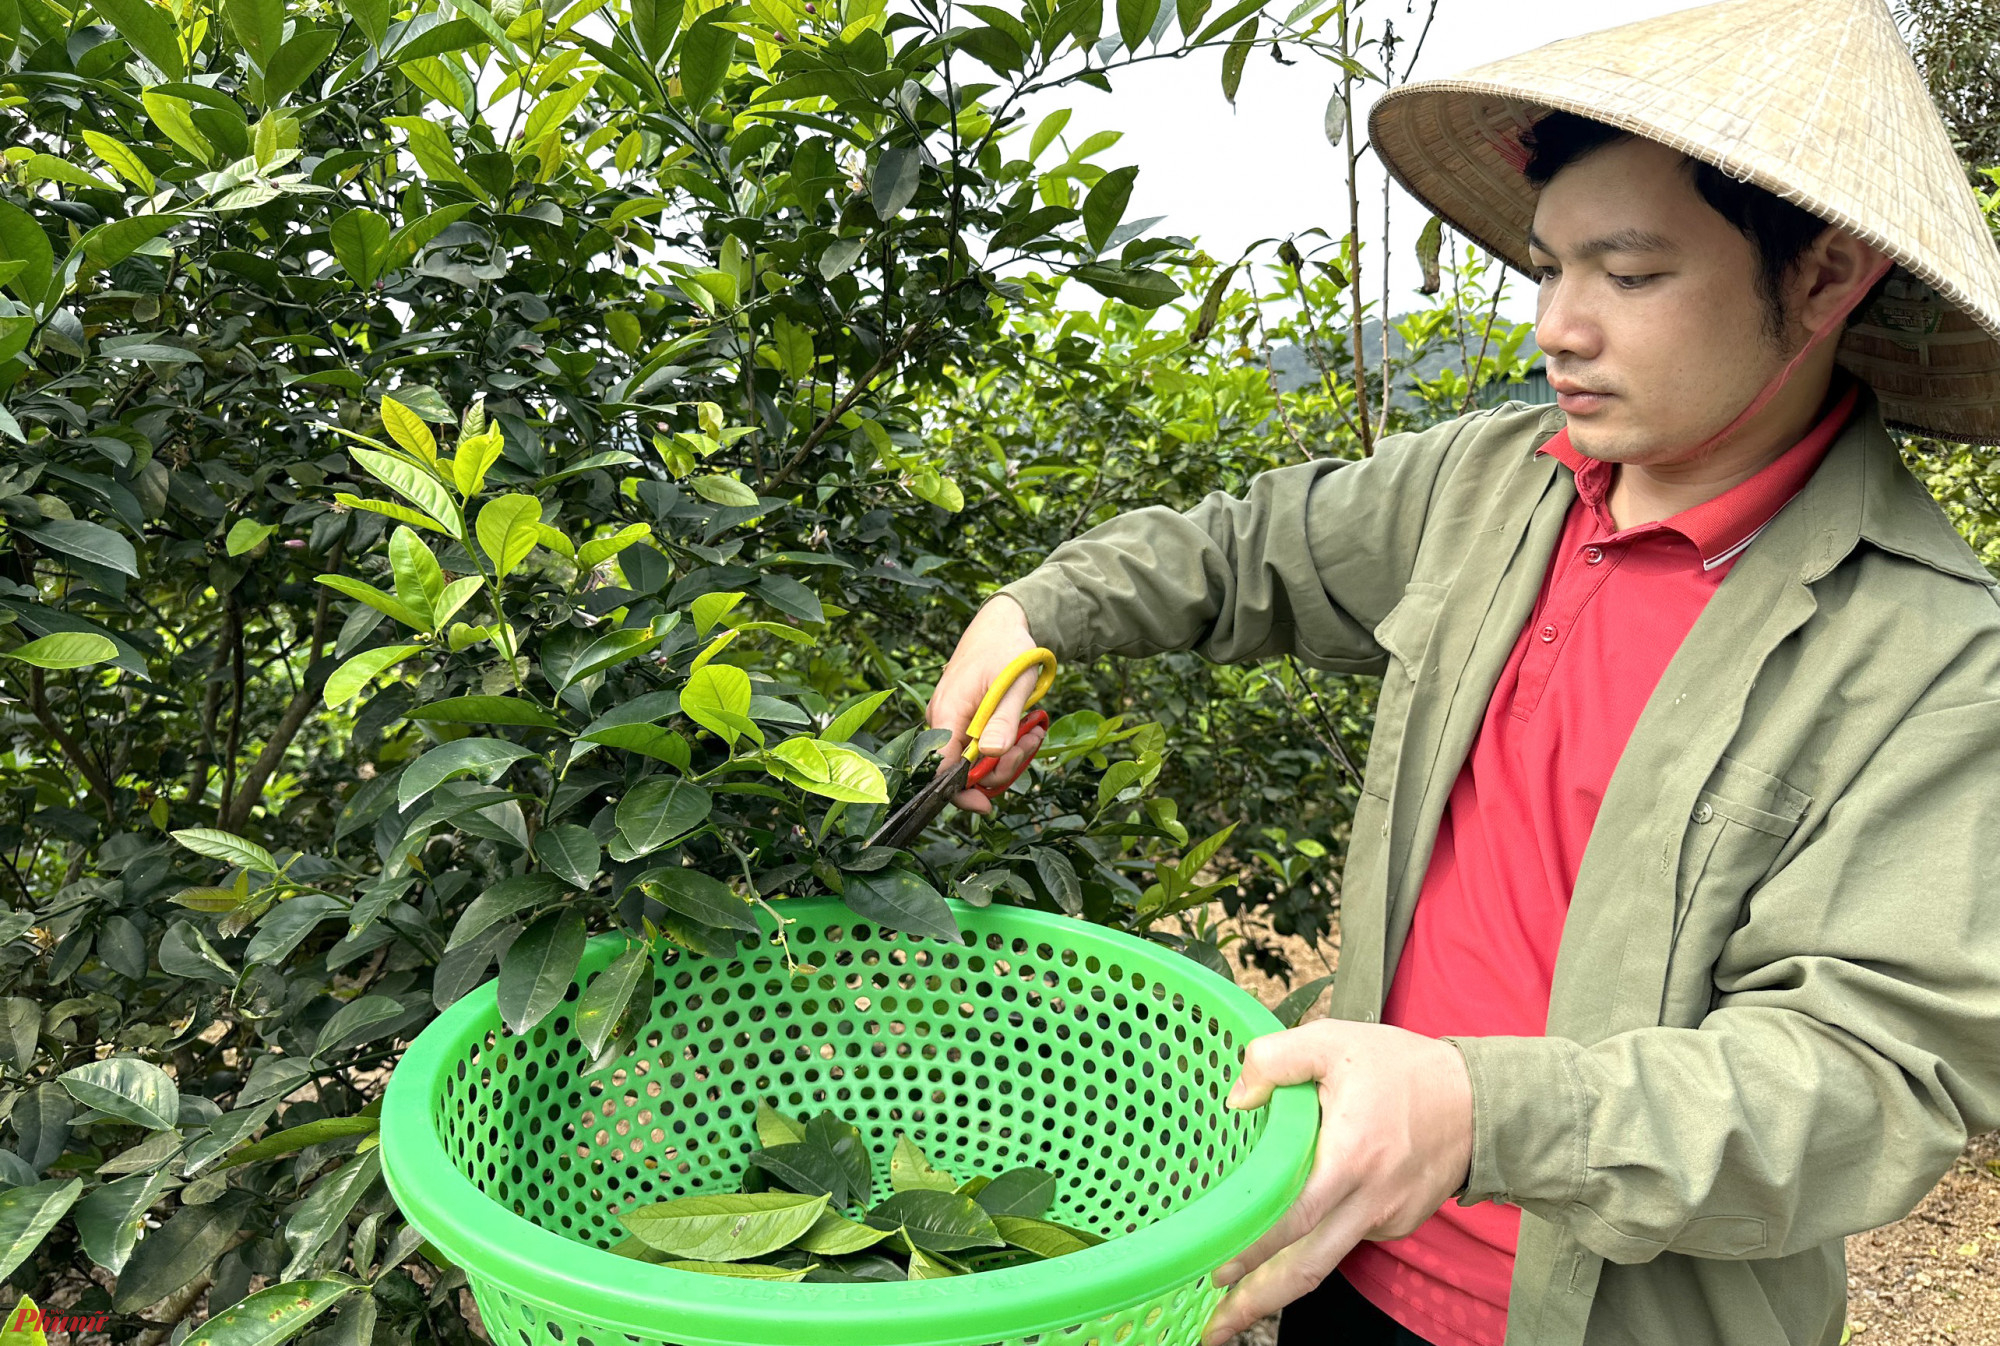 Anh Đặng Văn Hóa (37 tuổi, trú xóm 4, xã Nam Kim) cho biết, hiện cây chanh đã ra trái, nhưng việc thu hoạch lá vẫn diễn ra bình thường. Sở hữu hơn 200 cây chanh trên diện tích 2.000m2, mỗi ngày gia đình anh Hóa hái được từ 5 - 7kg lá chanh tươi để bán. 